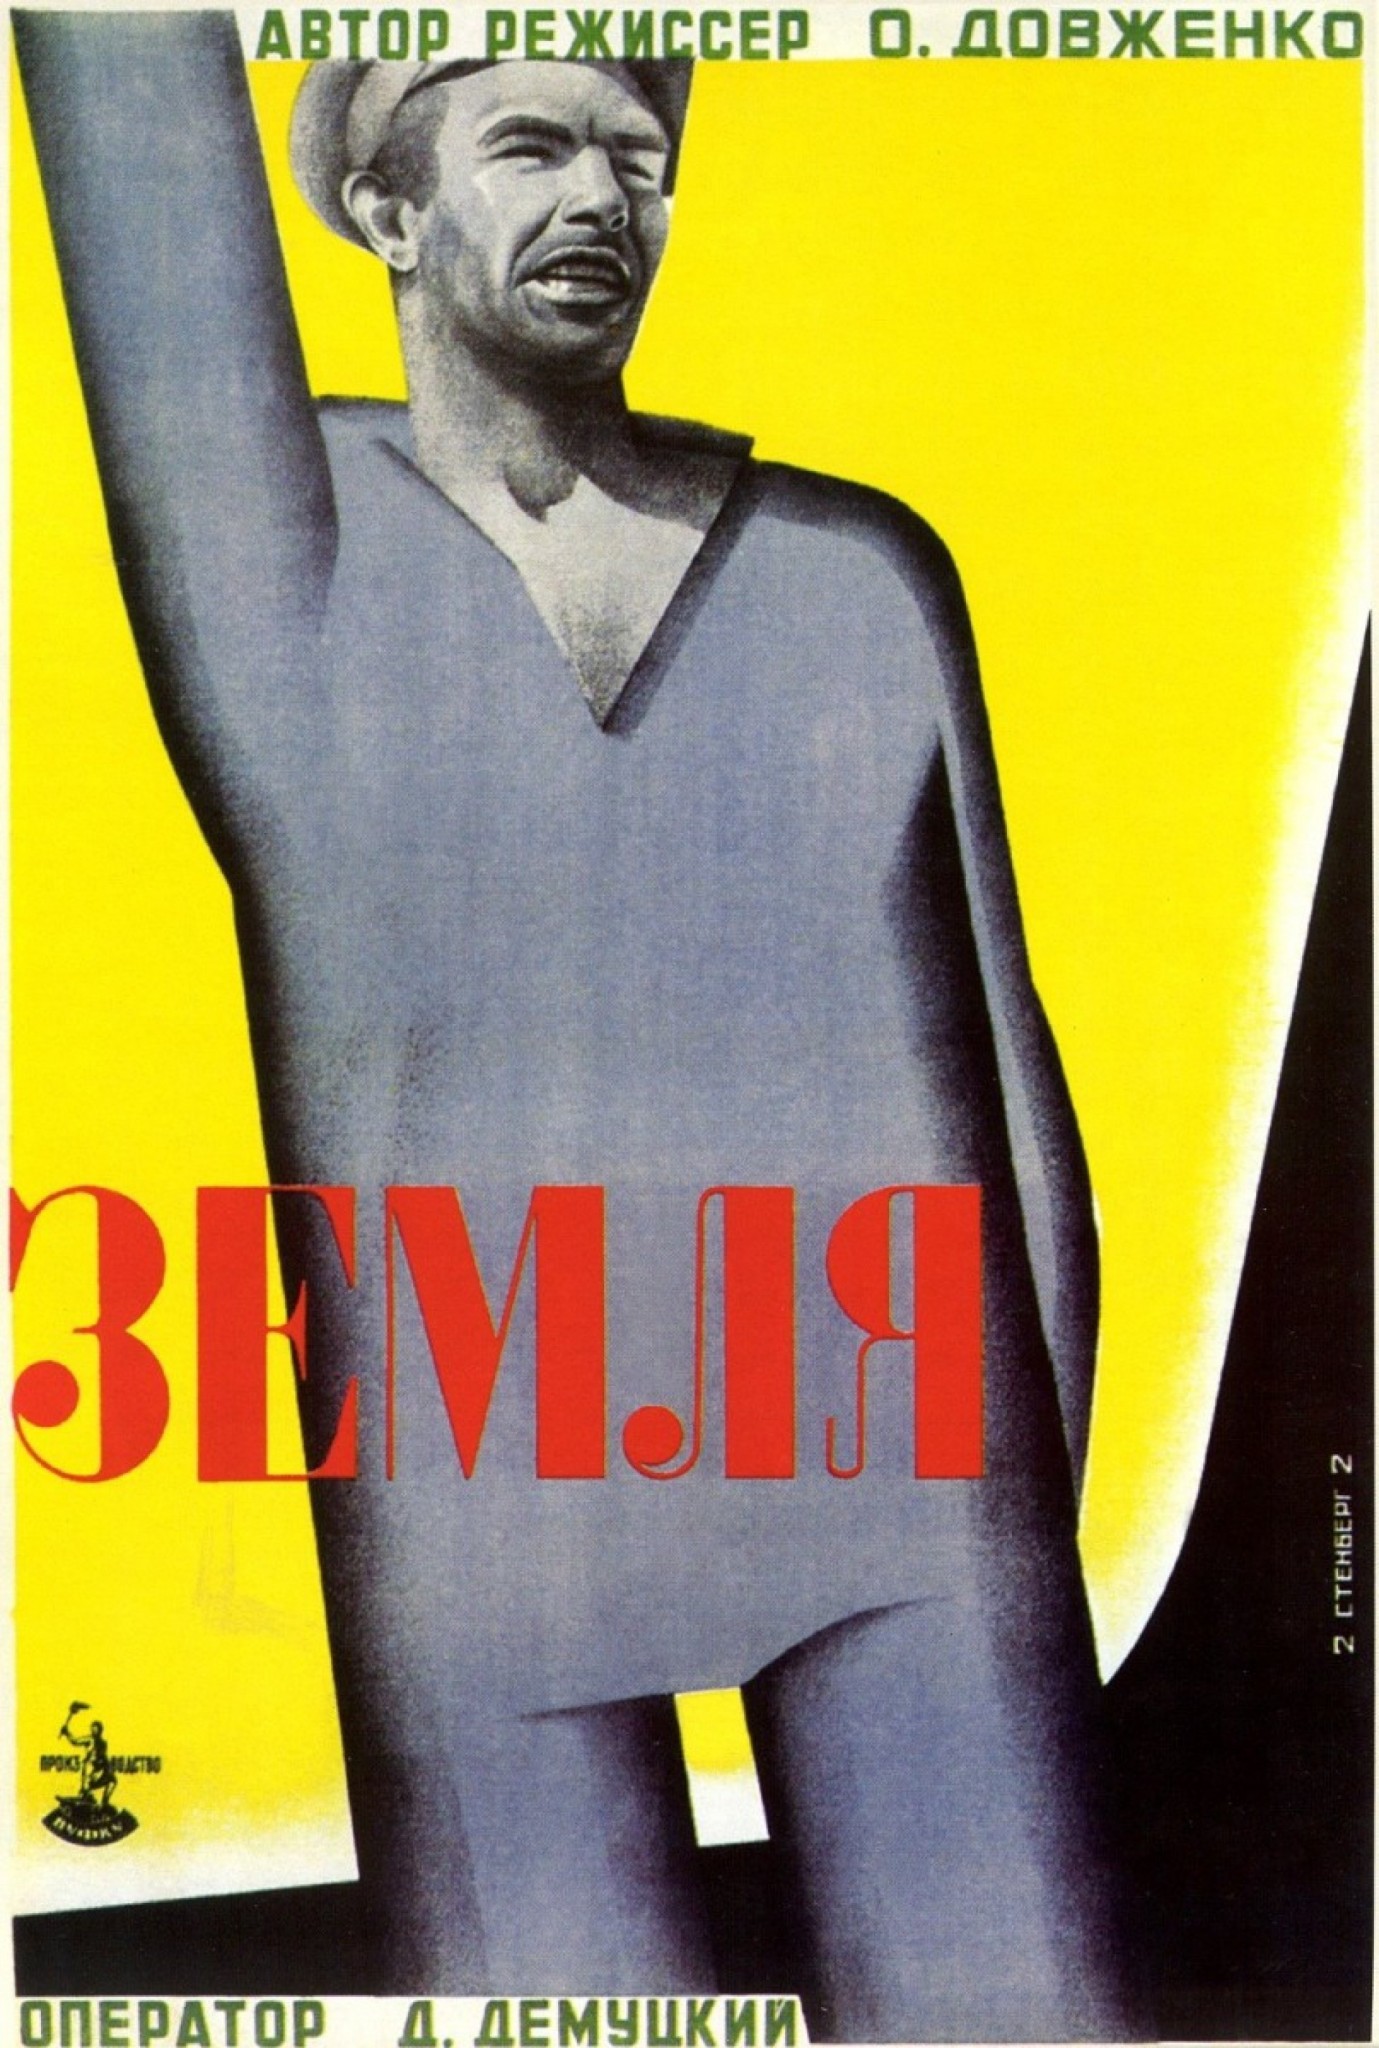 An original poster of Dovzhenko's Zemlya